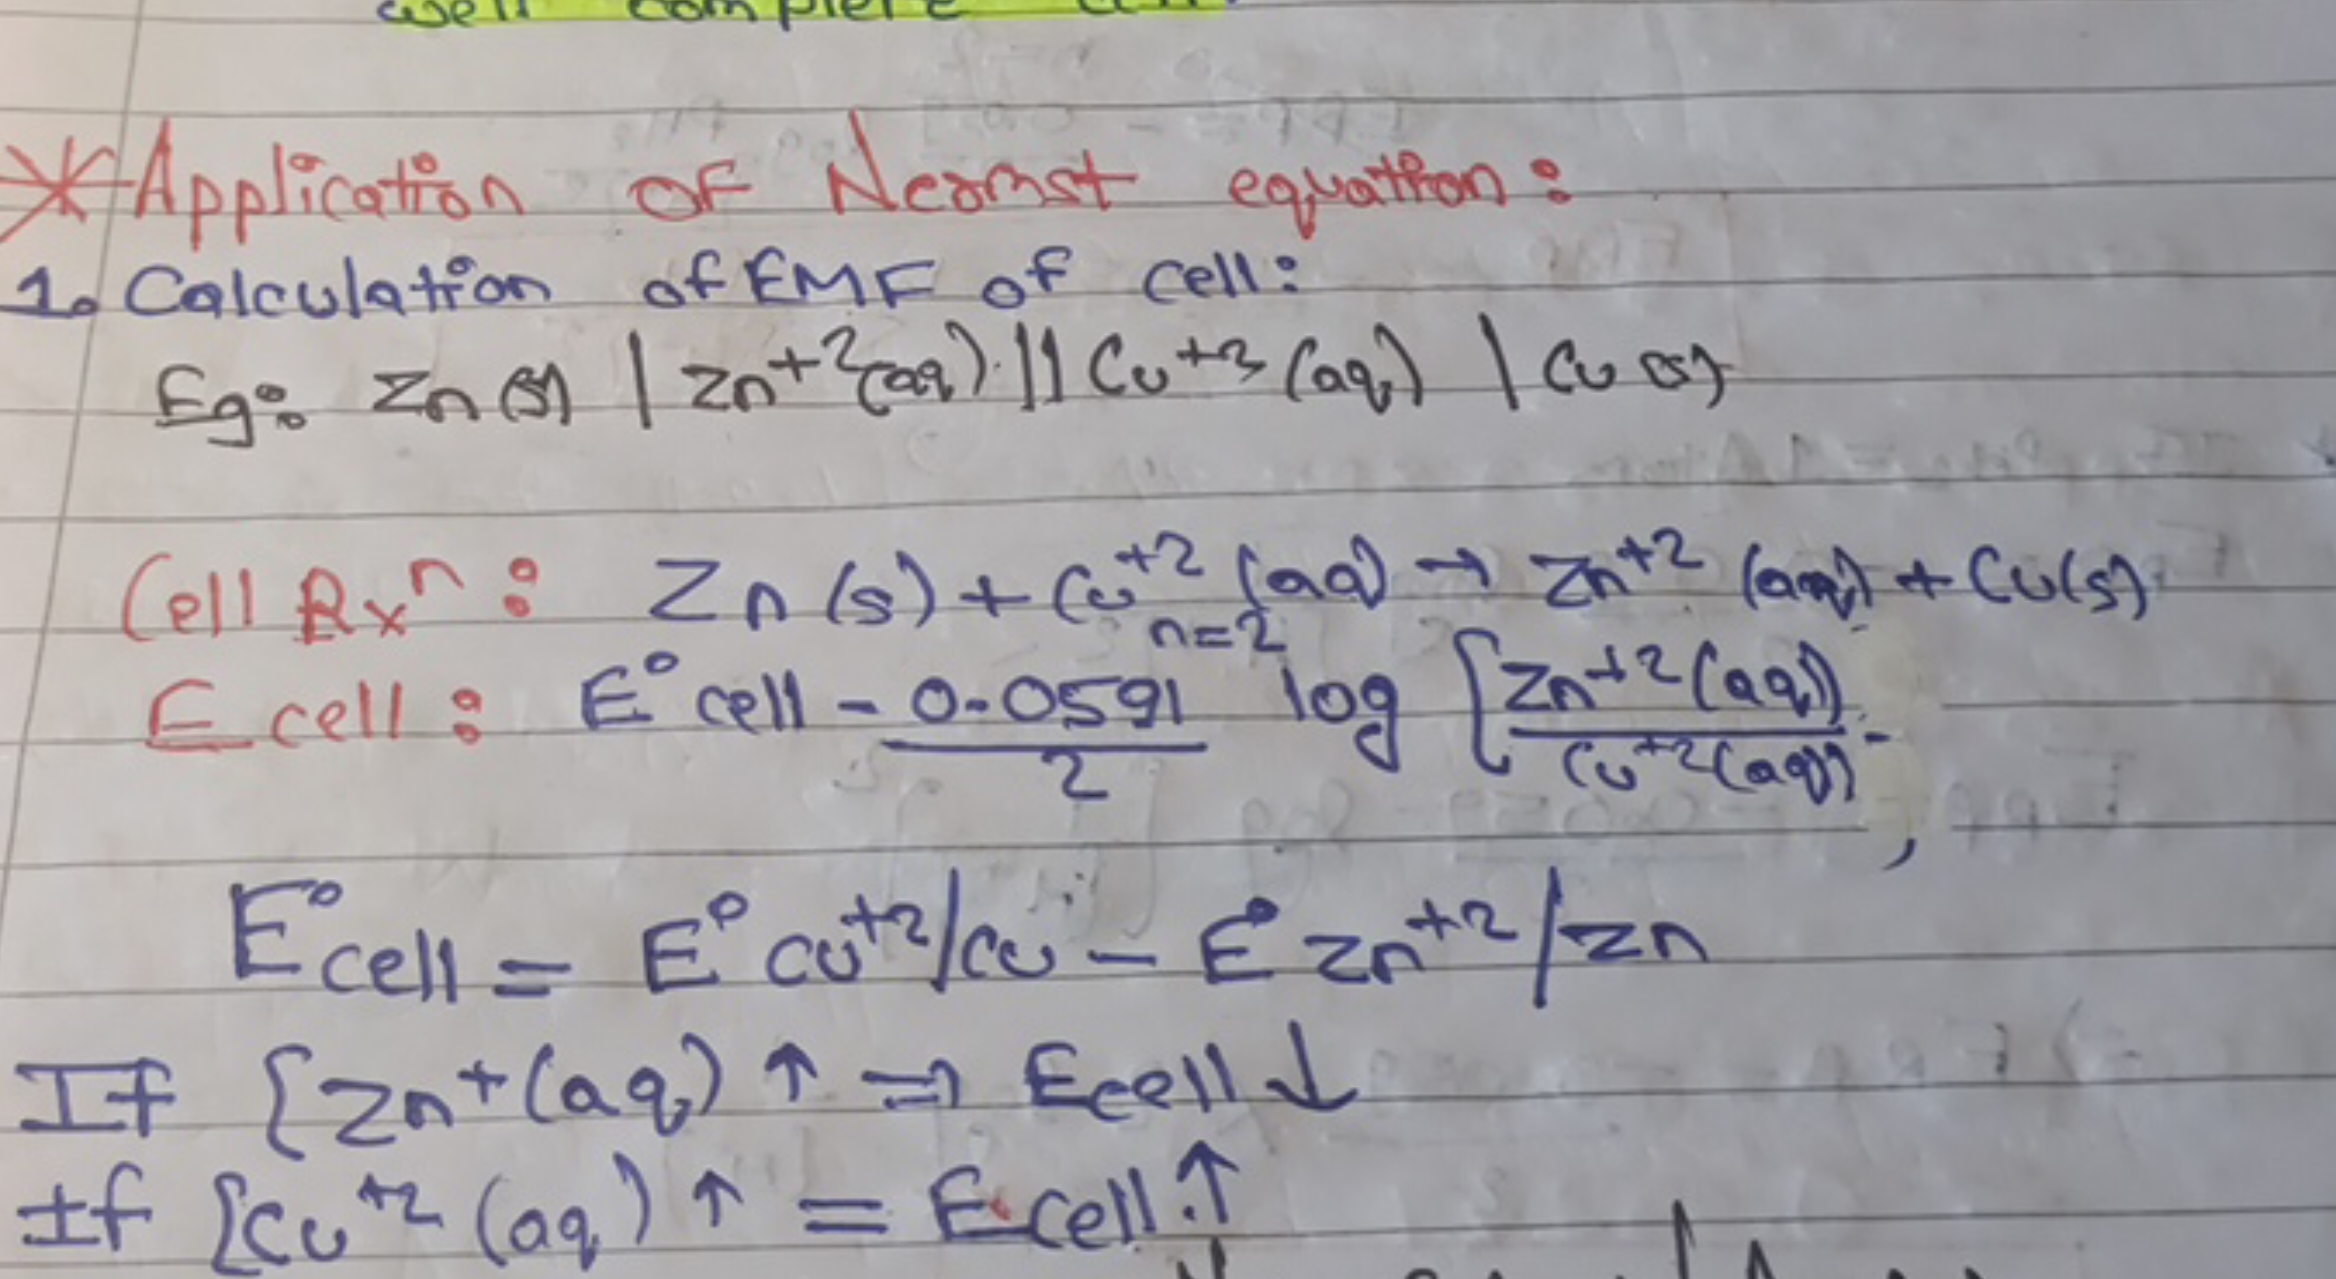 *Application of Nernst equation:
1. Calculation of EMF of cell:
 Eg: z